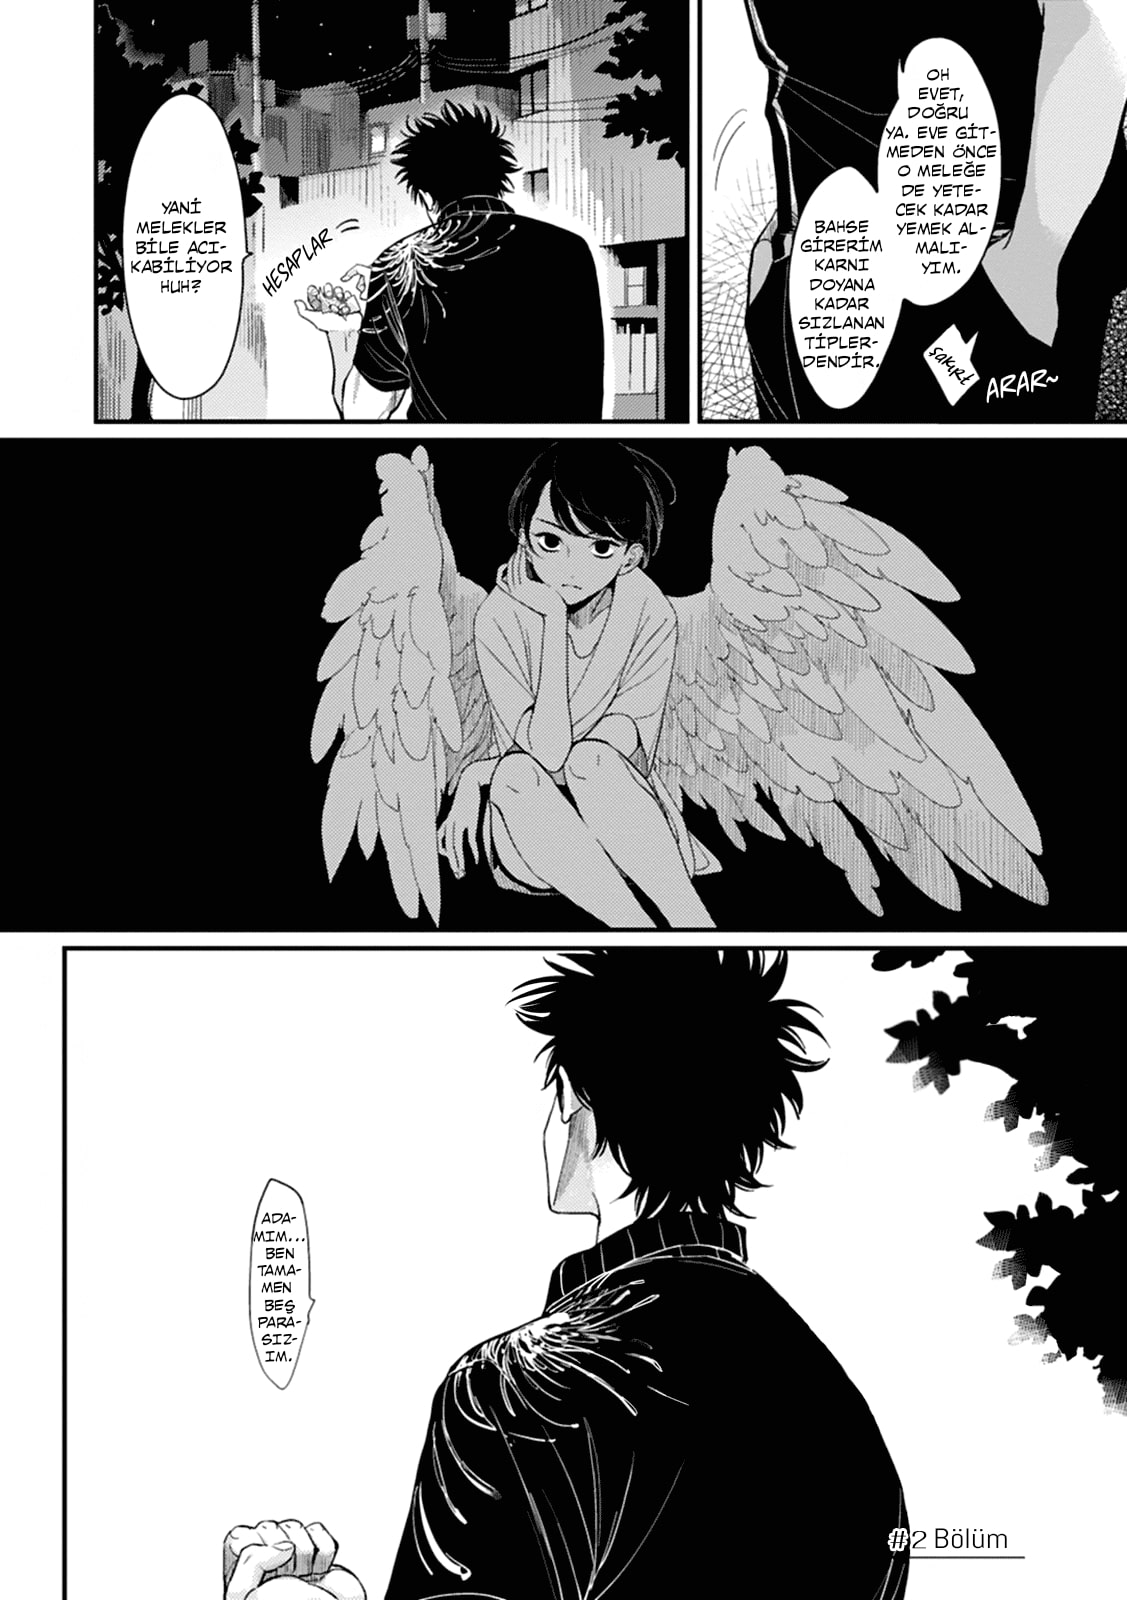 ˏˋ one room angel icon ˎˊ˗  Angel manga, Anime icons, Manhwa manga